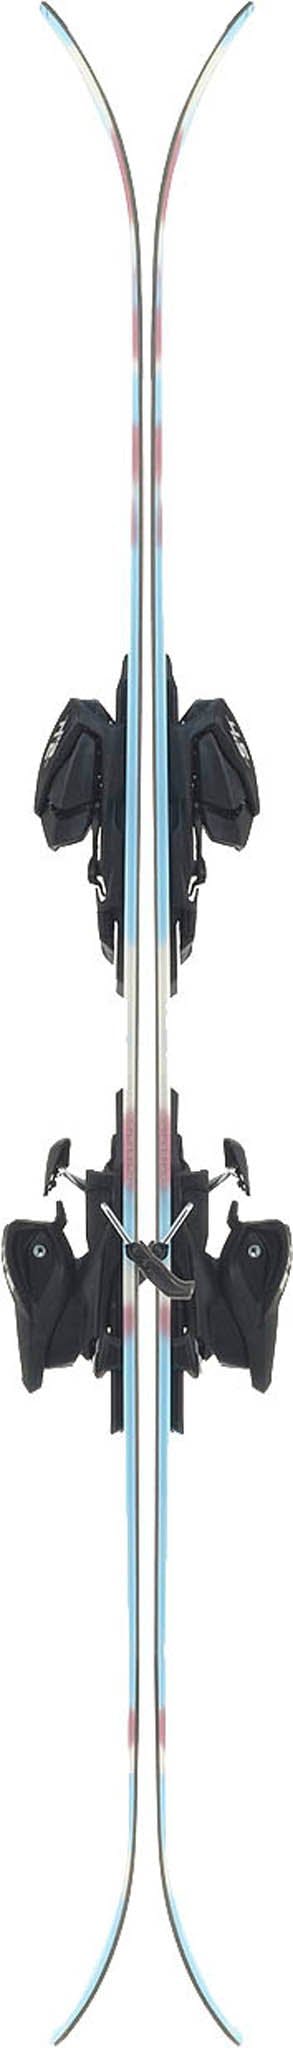 Numéro de l'image de la galerie de produits 2 pour le produit Ski Missy 4.5 Fdt - Jeune